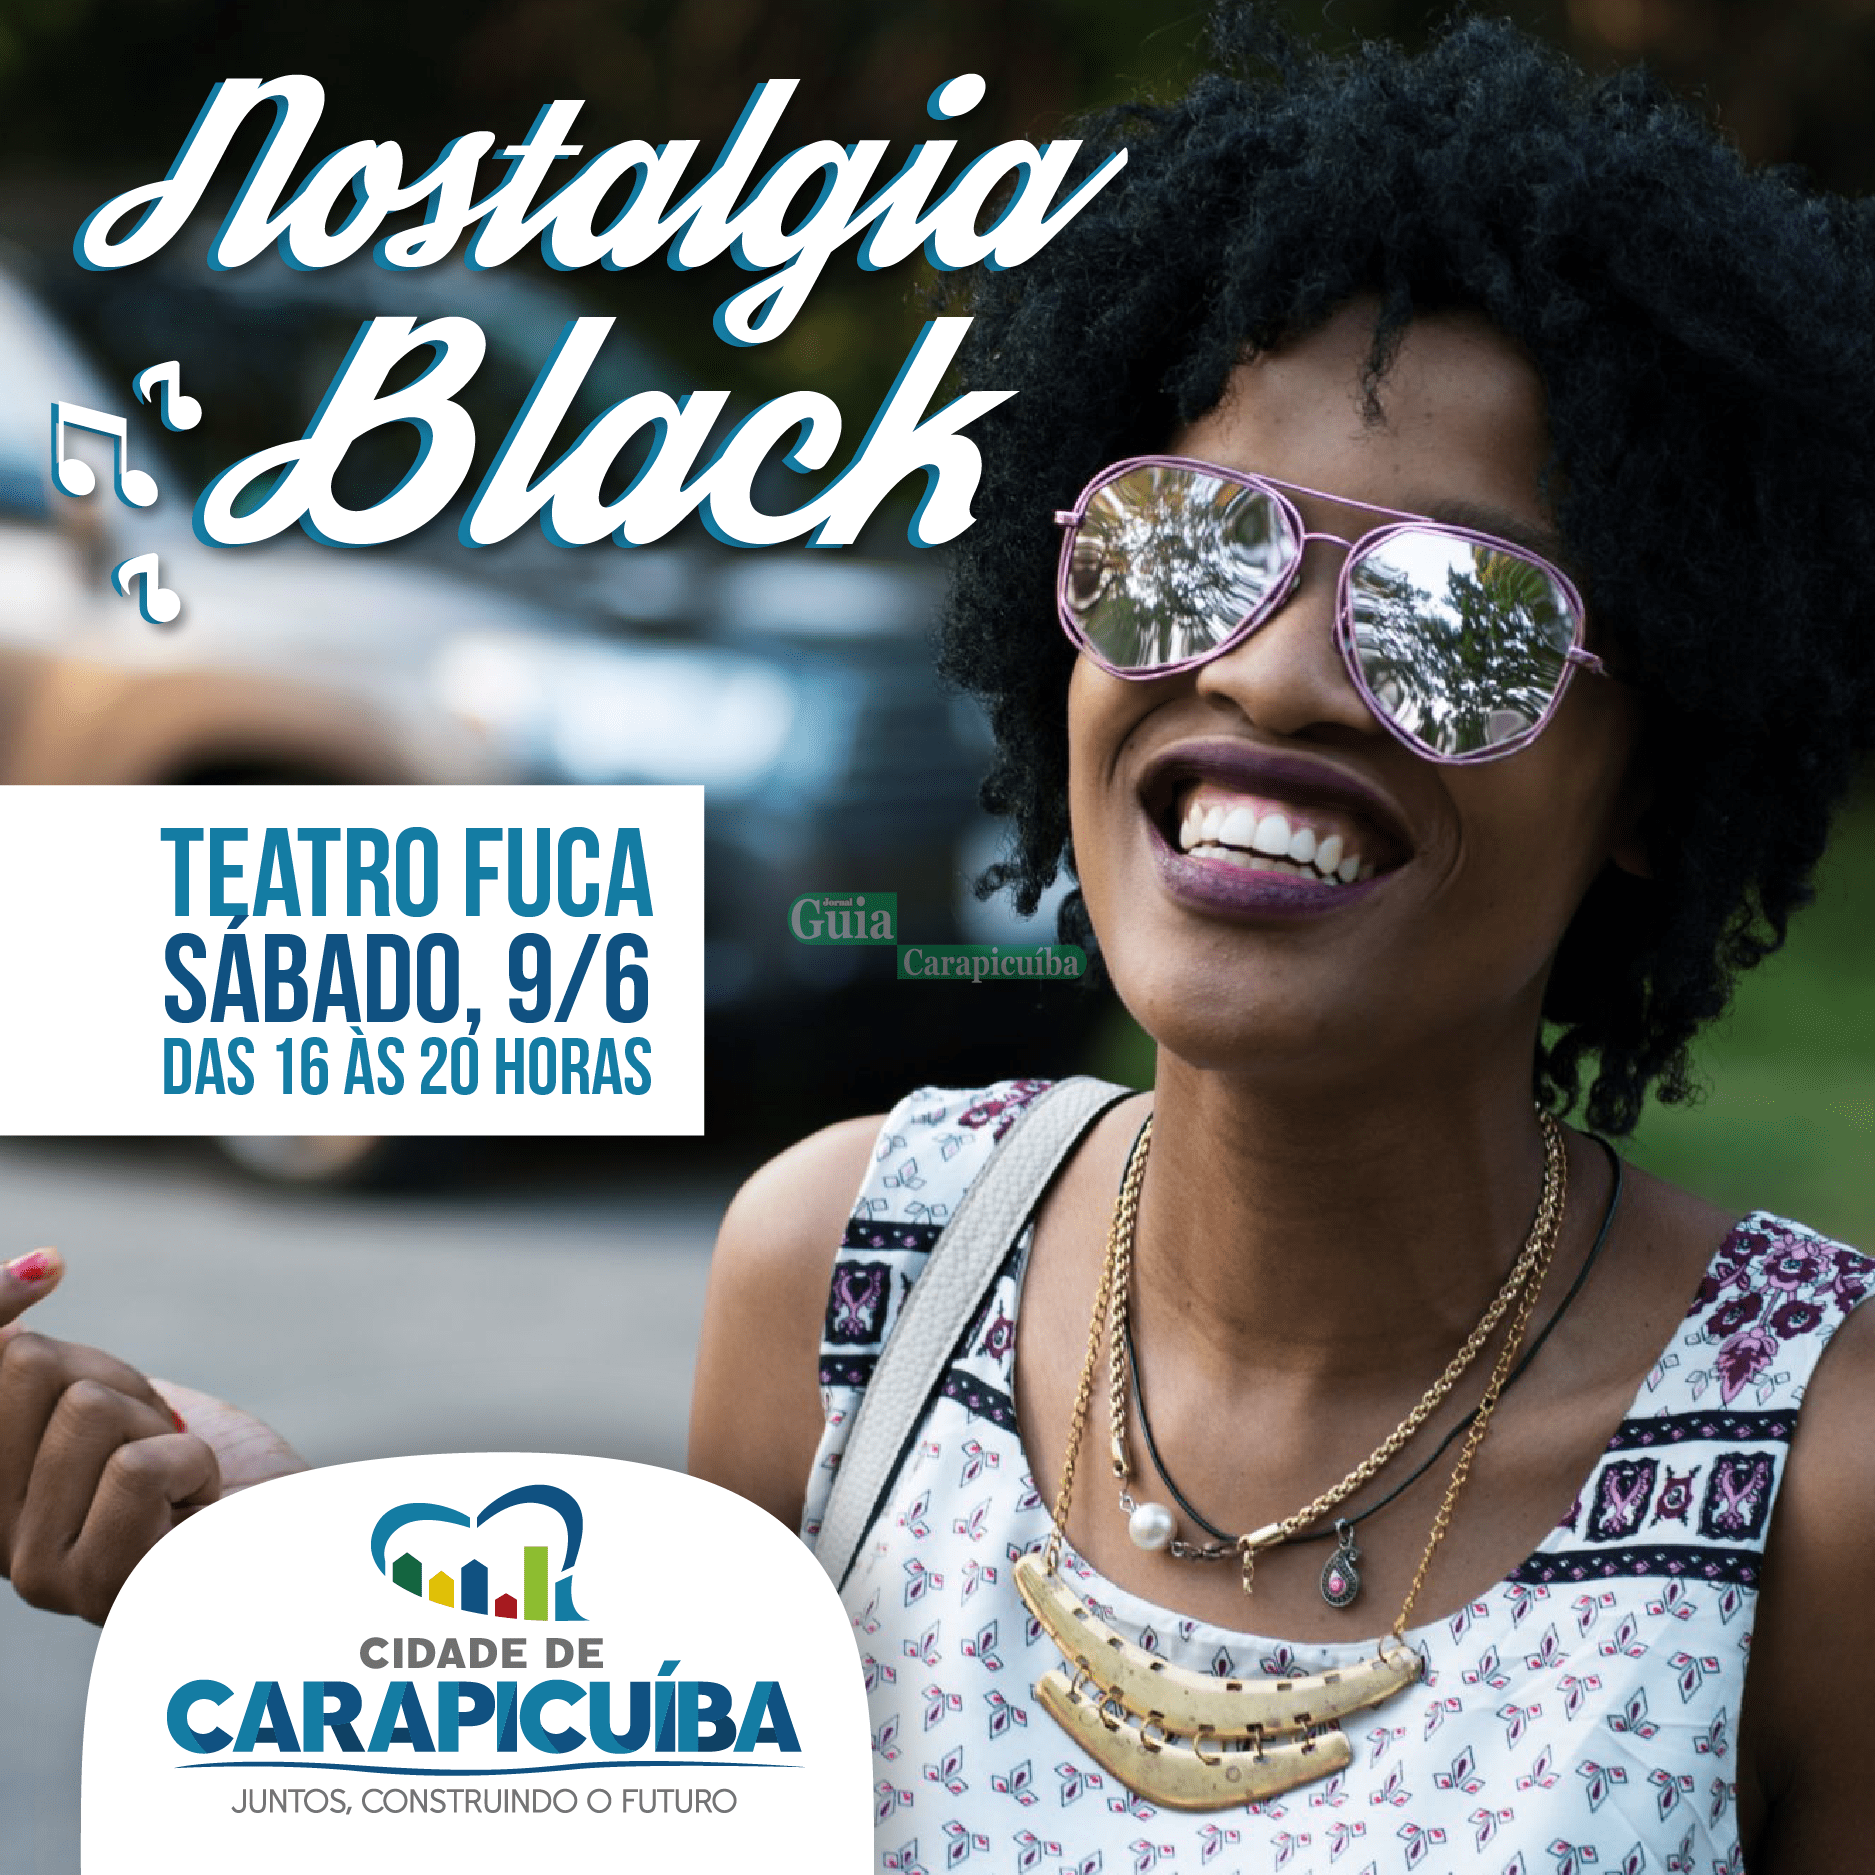 Baile Nostalgia Black é atração cultural no fim de semana em Carapicuíba